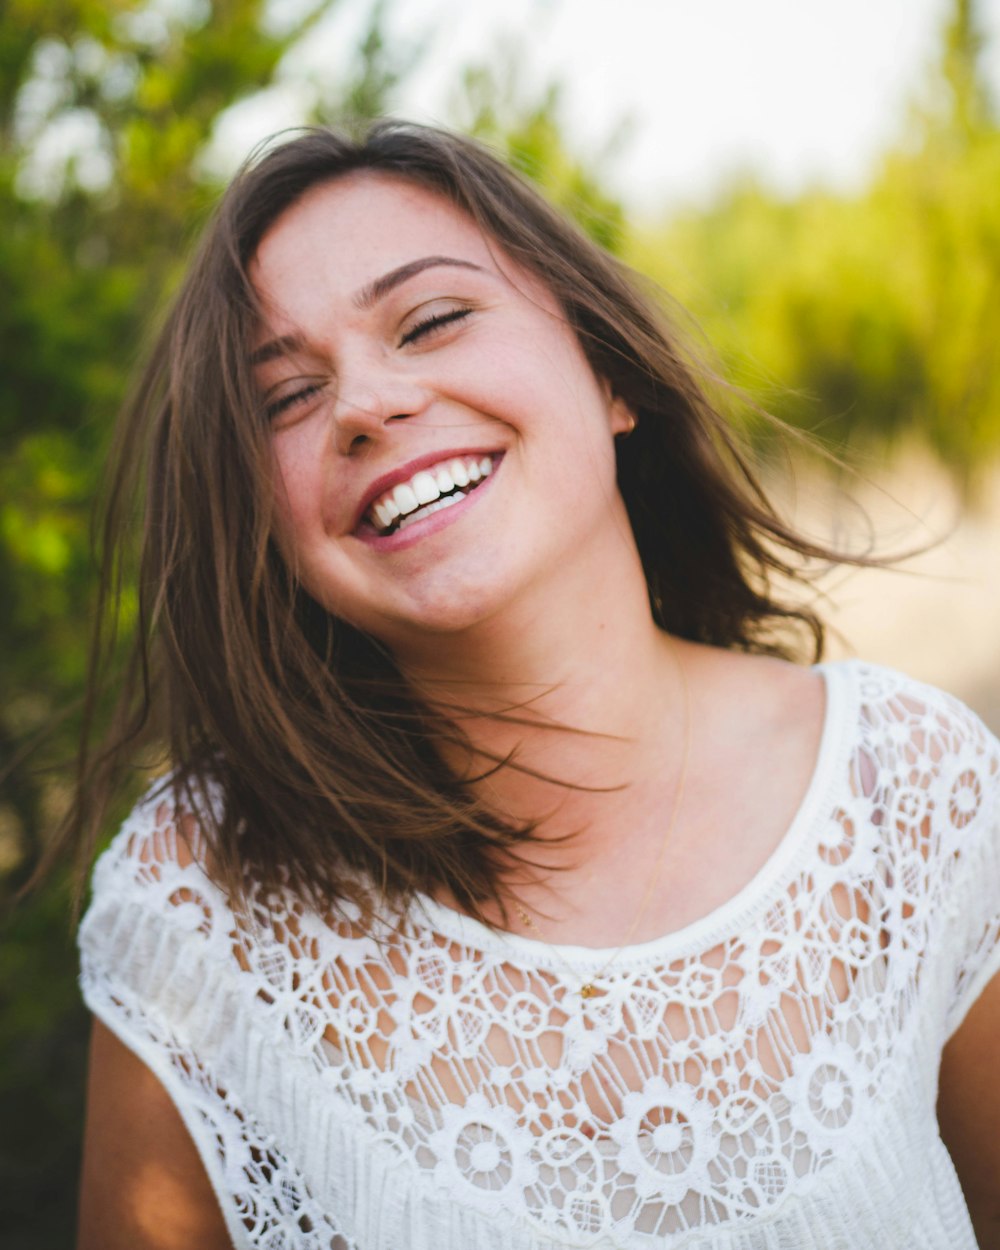 Mujer sonriendo con top blanco